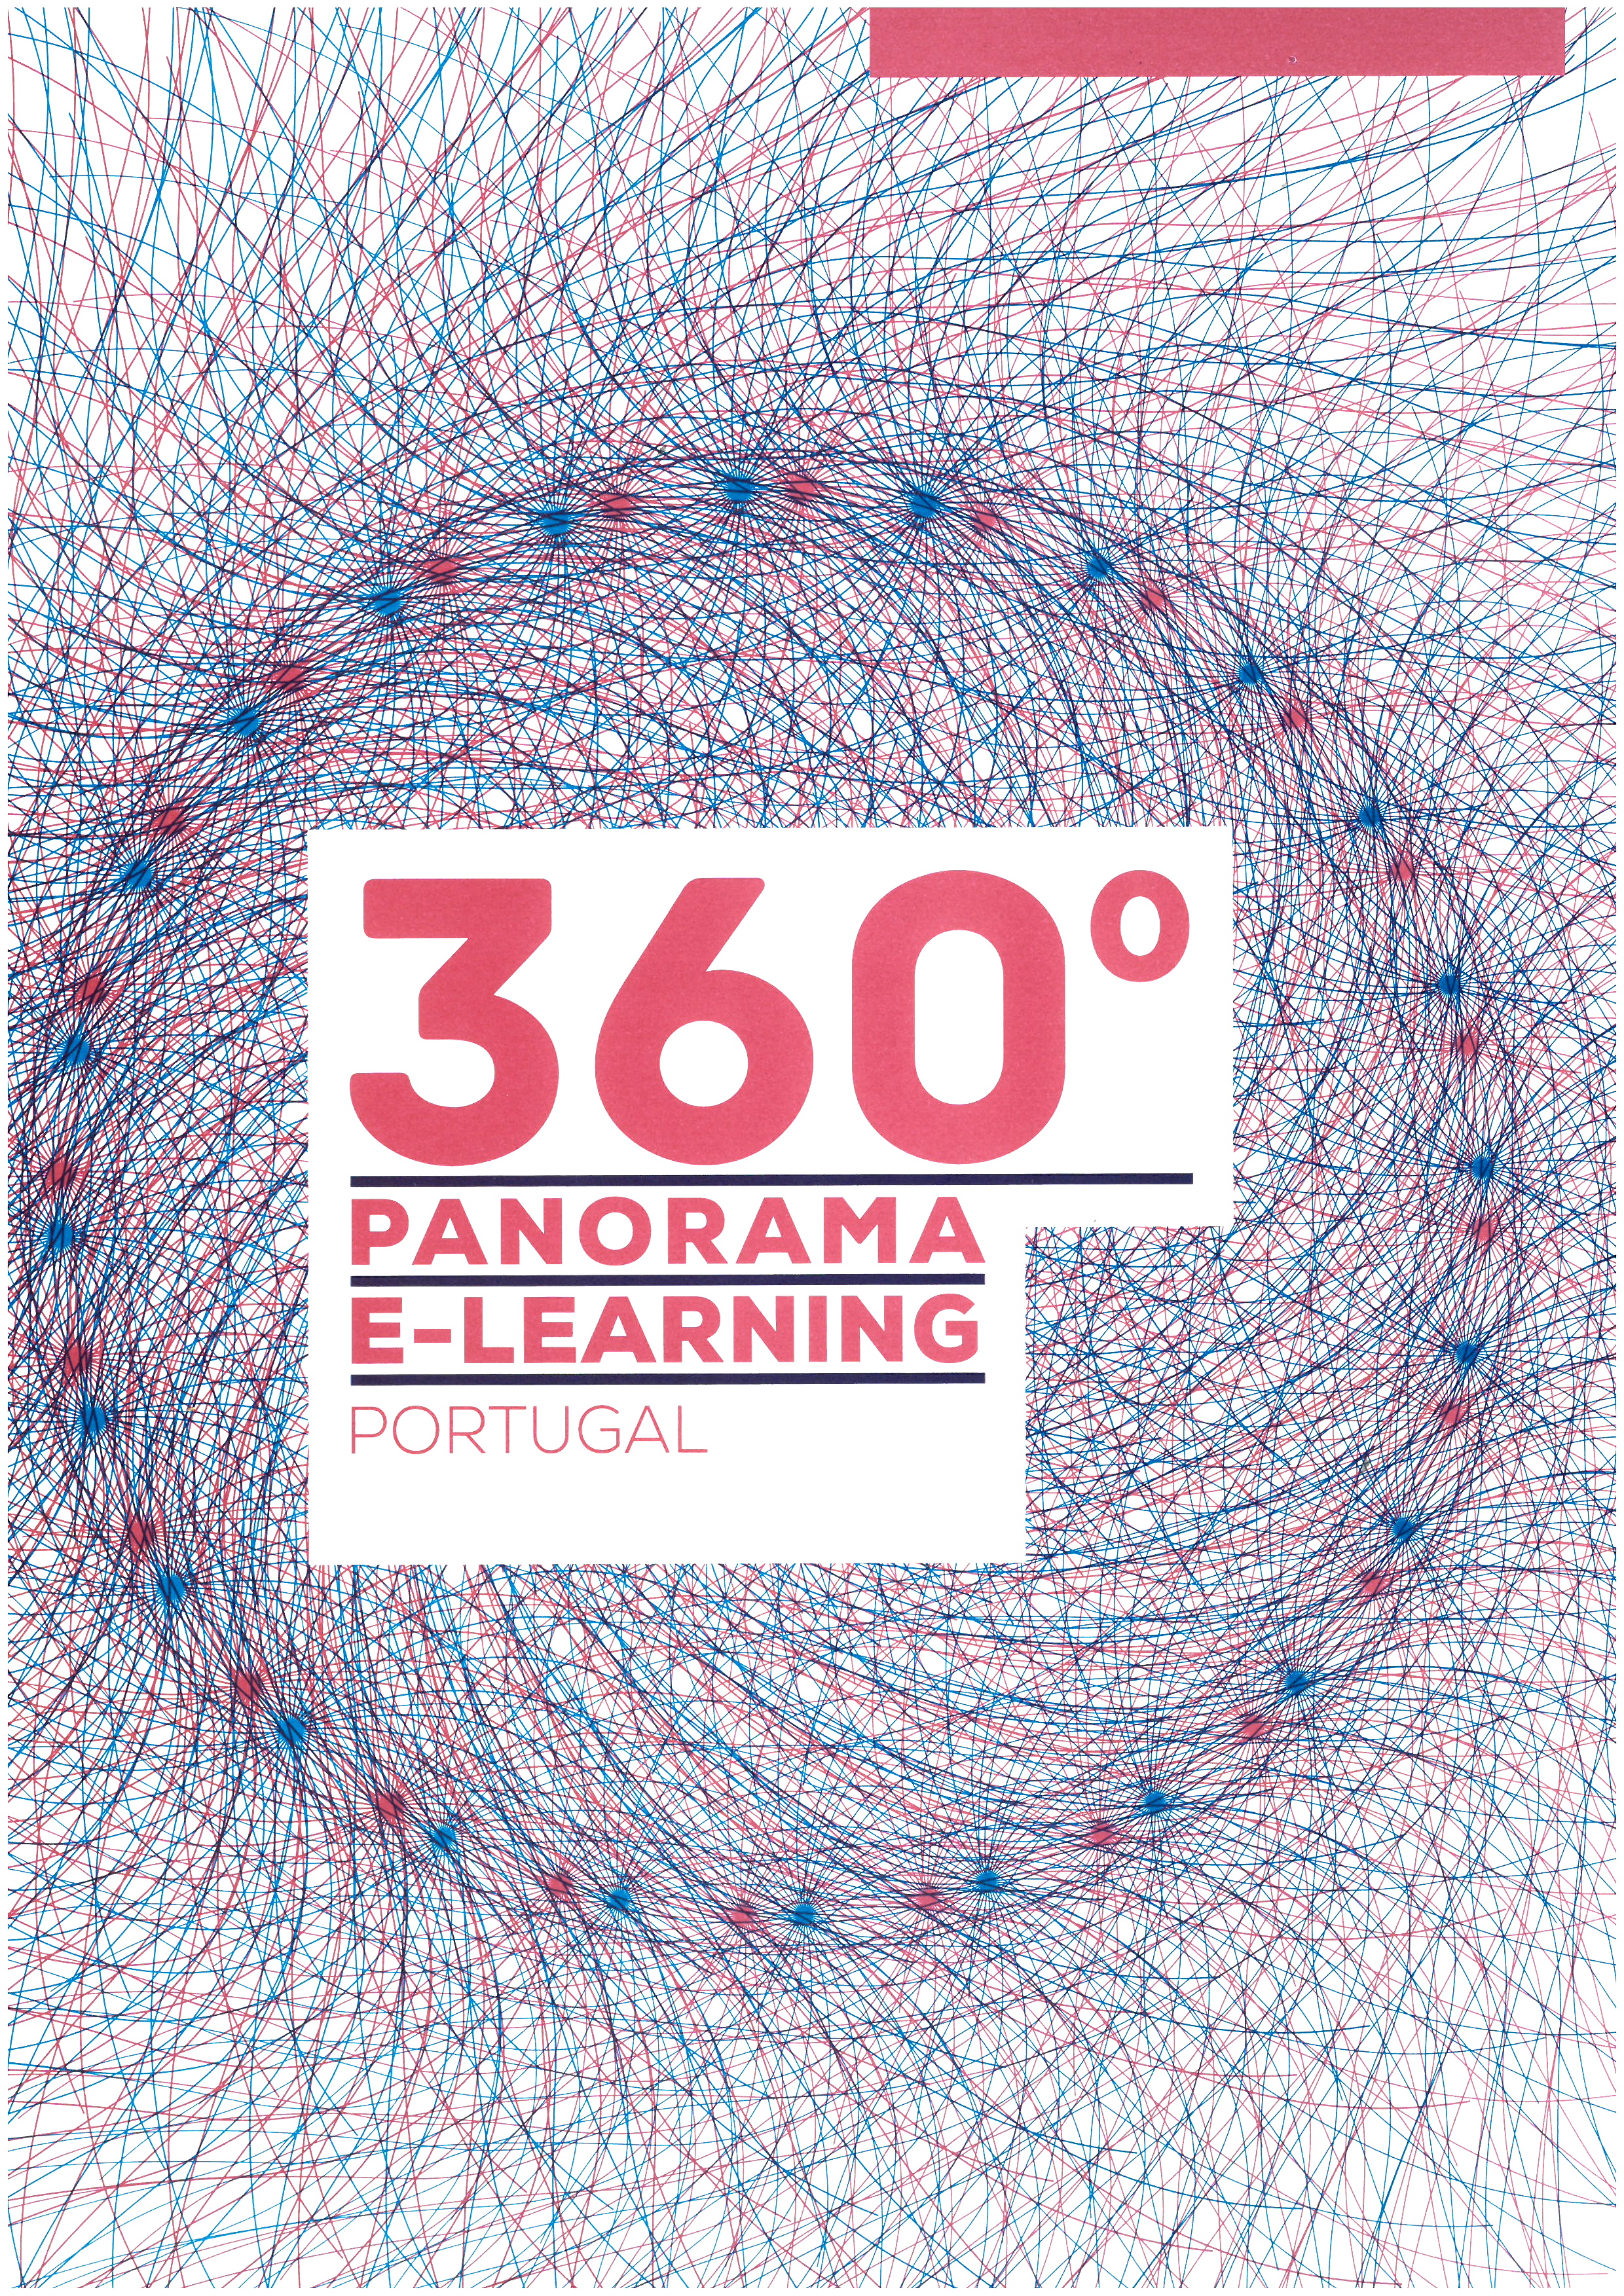 Capa de Panorama e-Learning Portugal 360